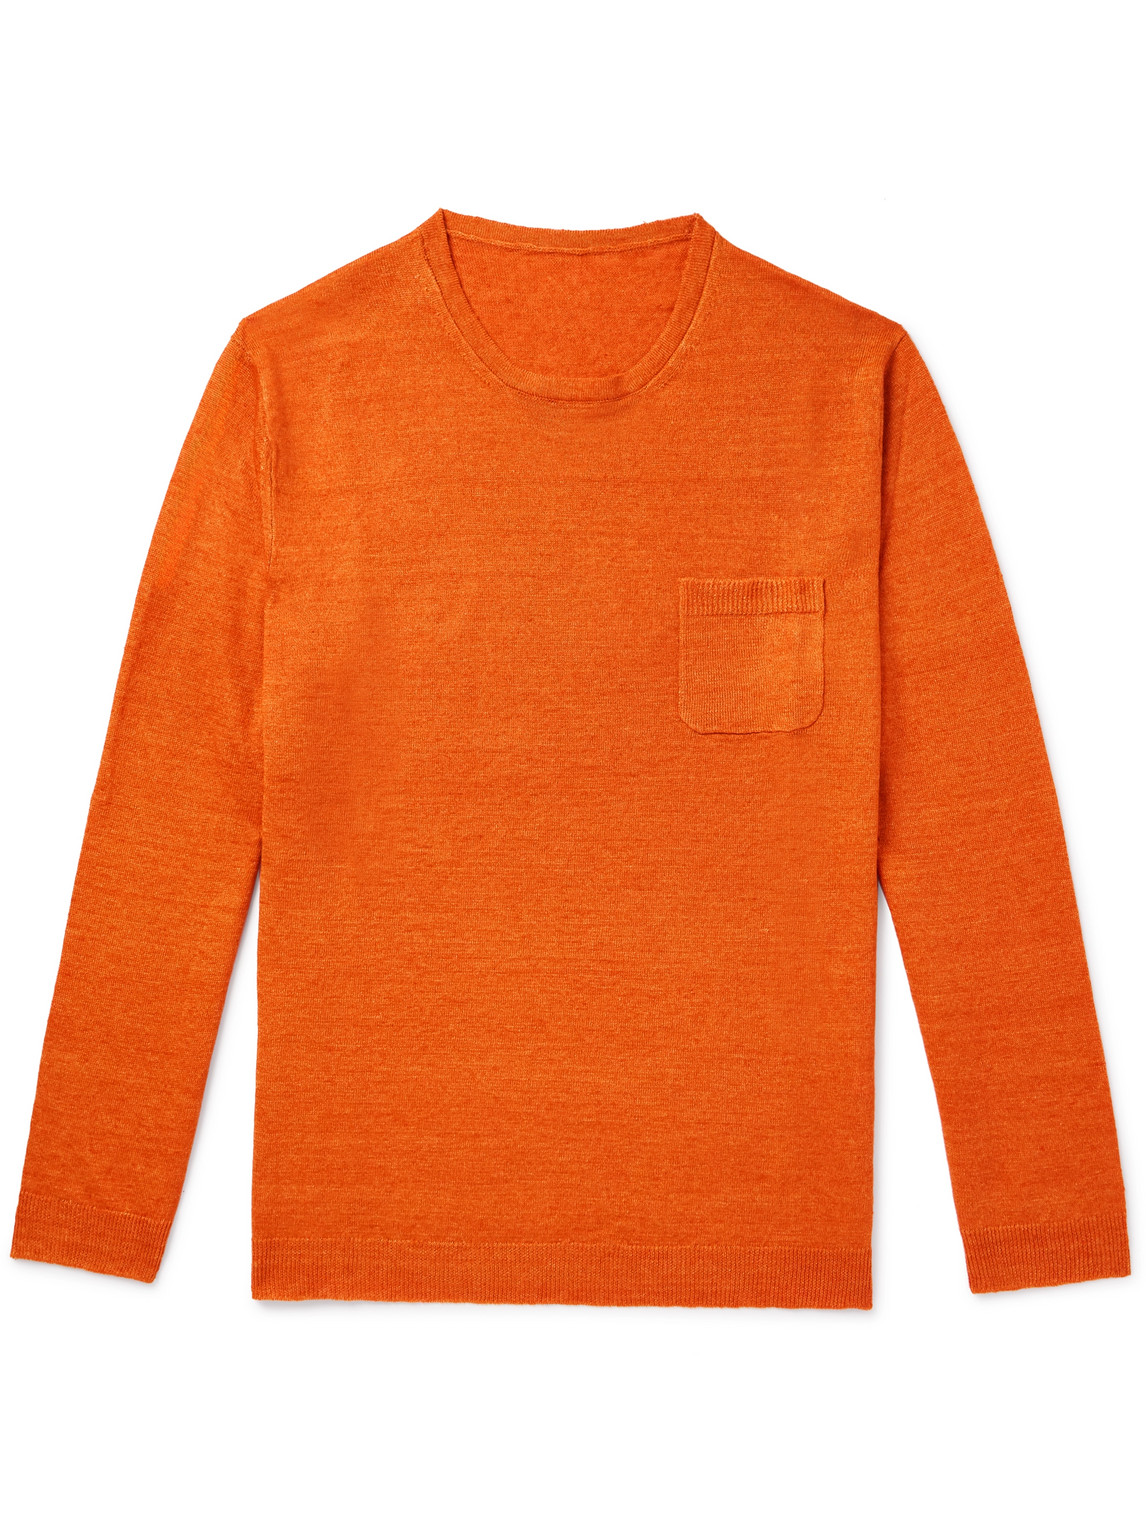 Anderson & Sheppard Linen Sweater In Orange